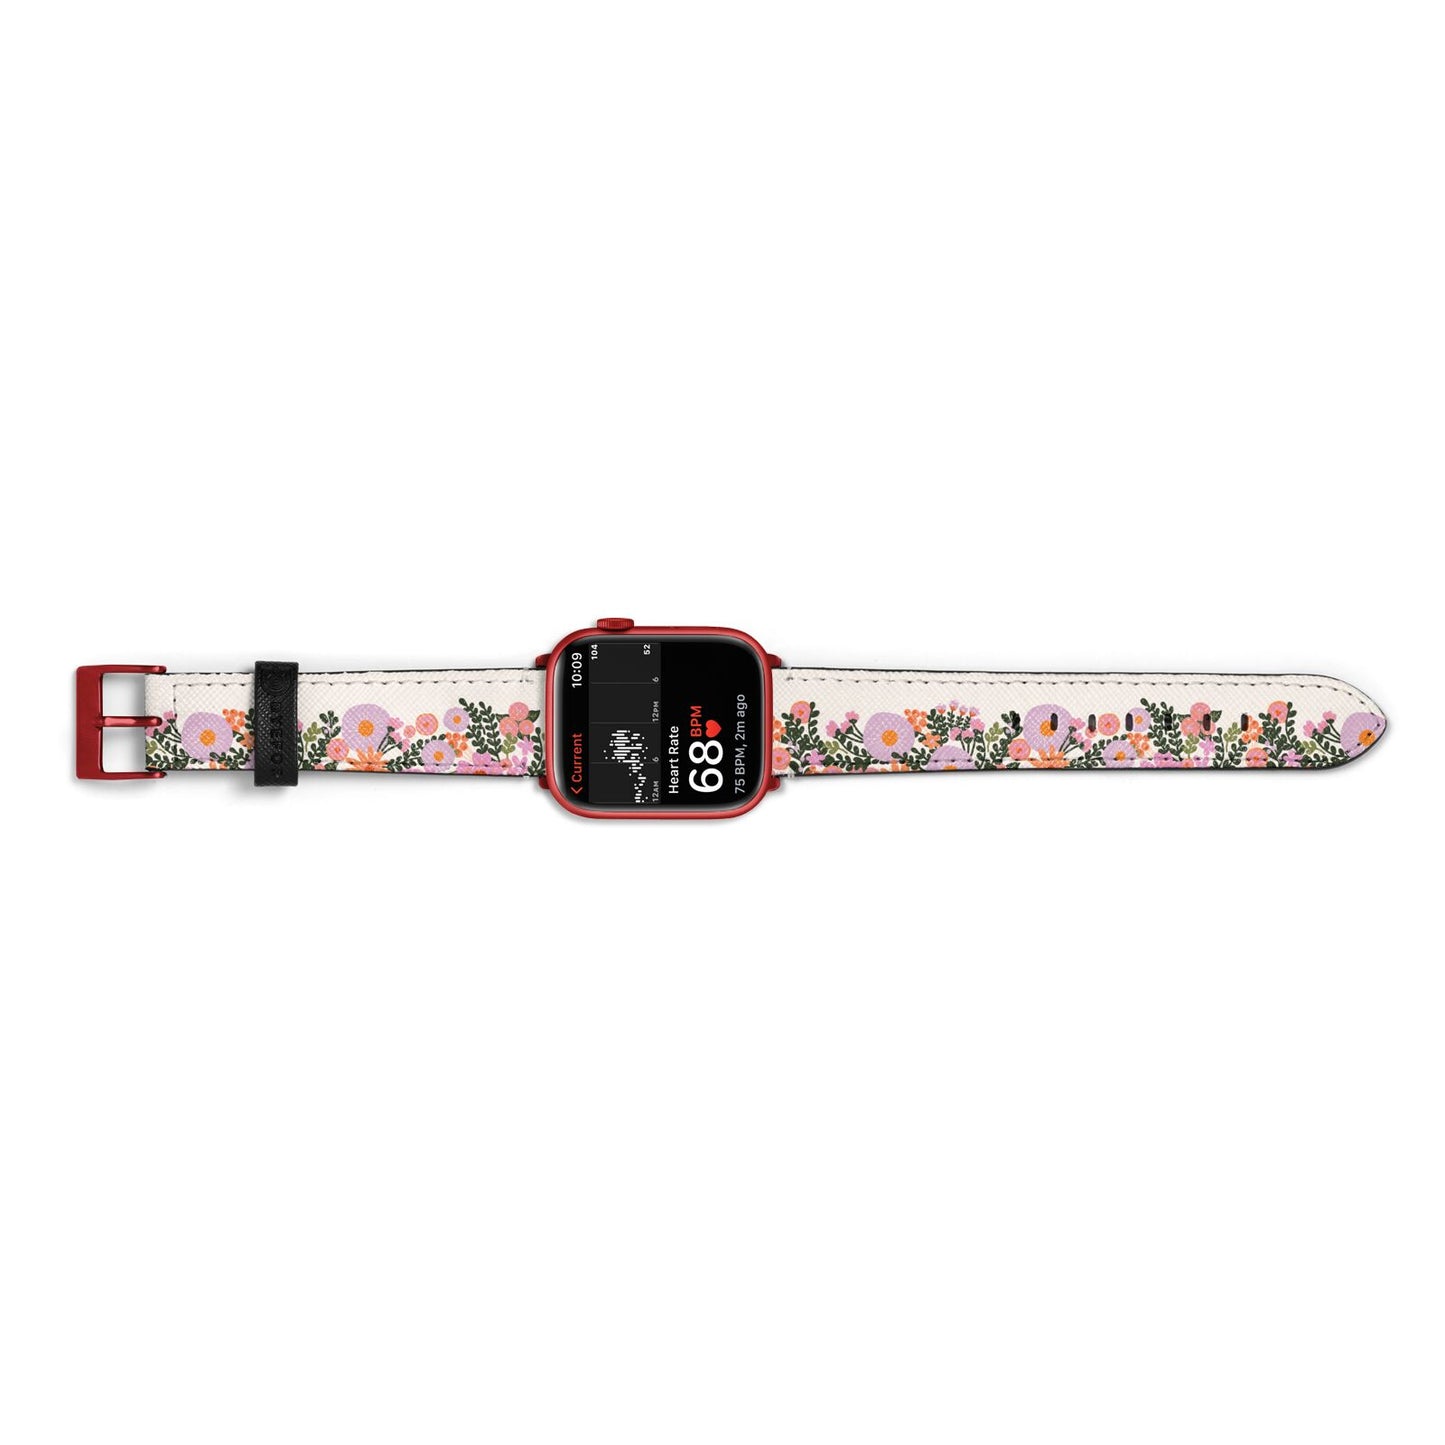 Floral Banner Pattern Apple Watch Strap Size 38mm Landscape Image Red Hardware